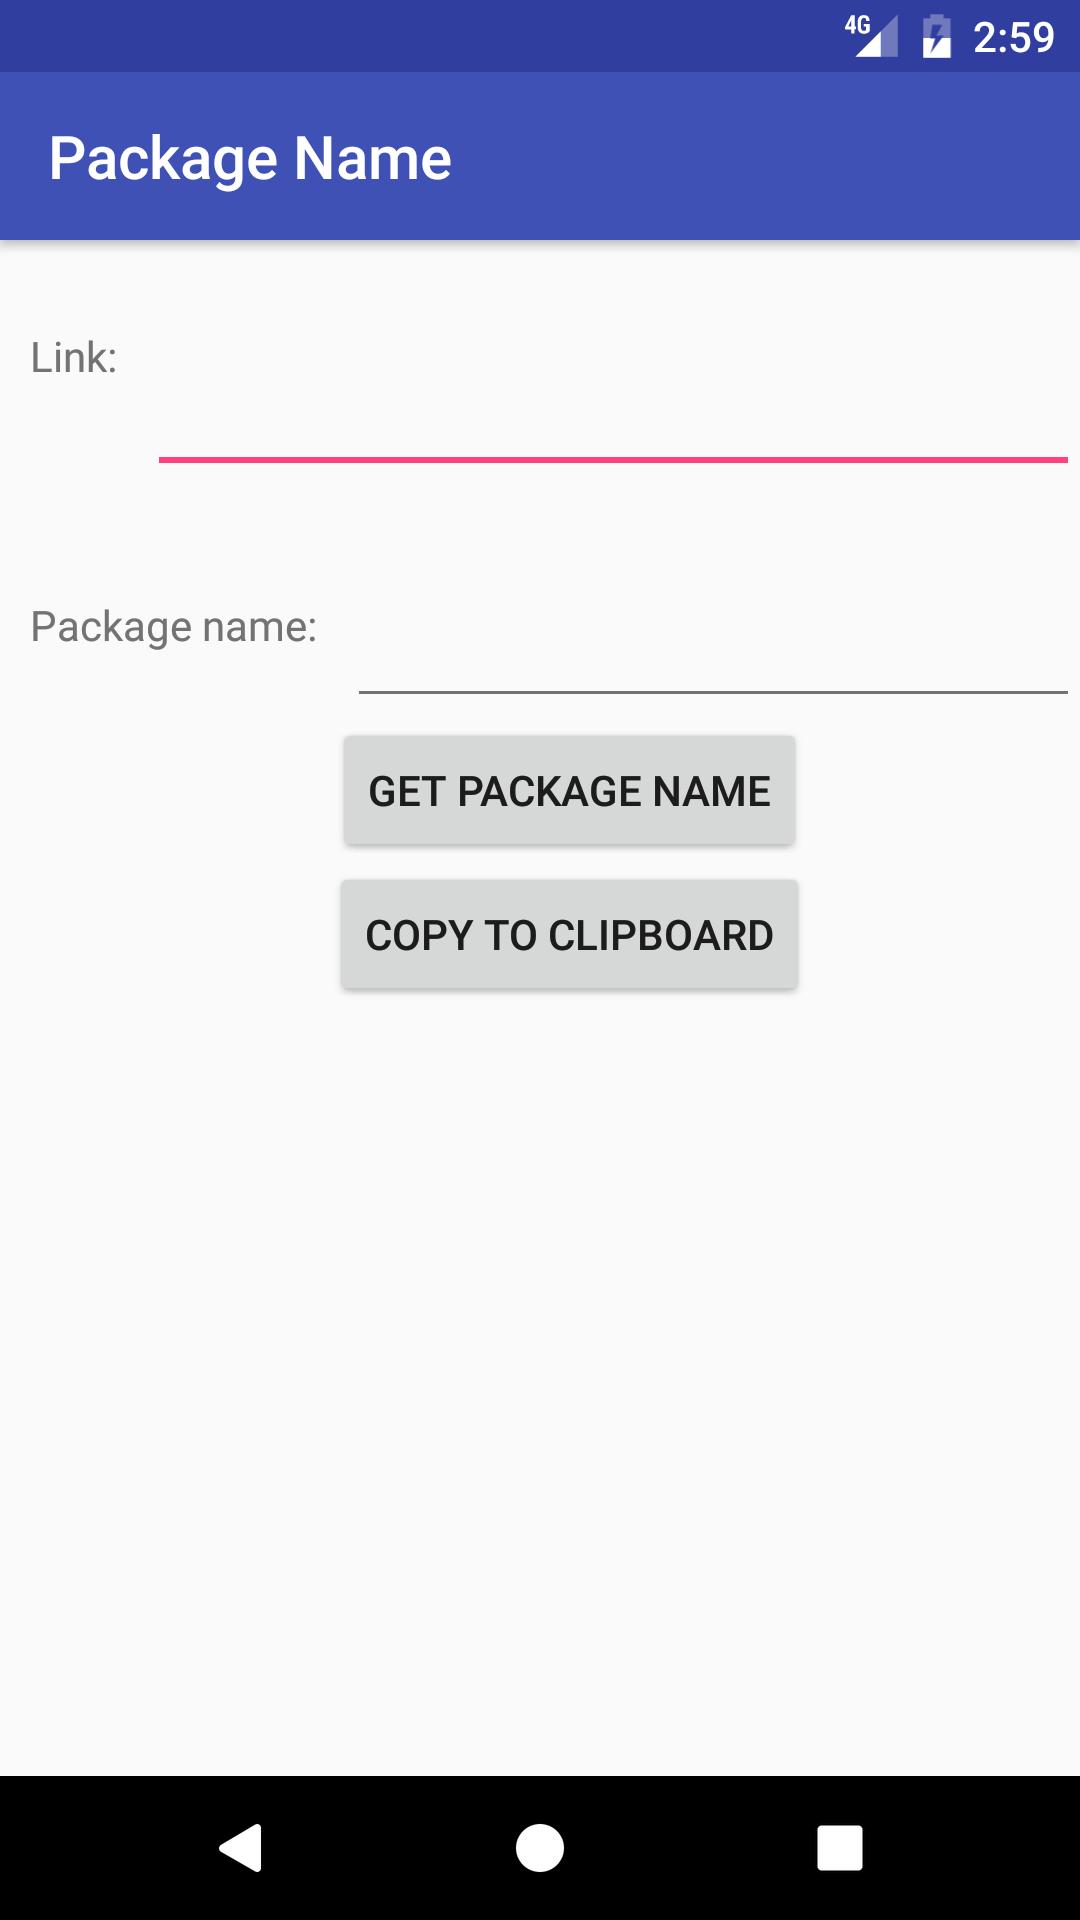 App package name